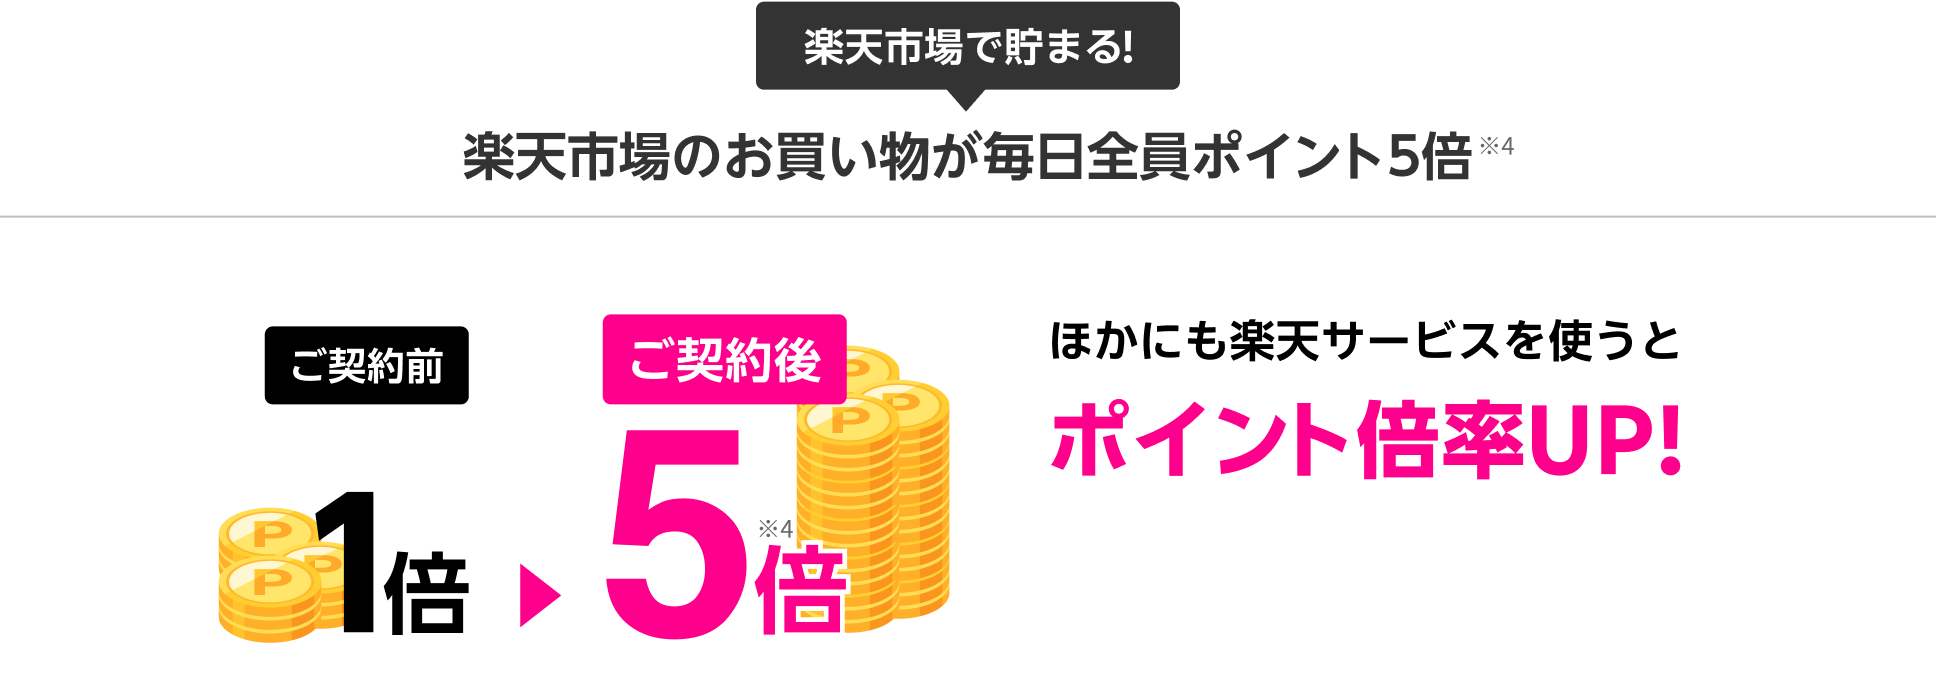 Rakuten最強プランご契約者 は楽天市場でのお買い物ポイント毎日全員5倍 ※4